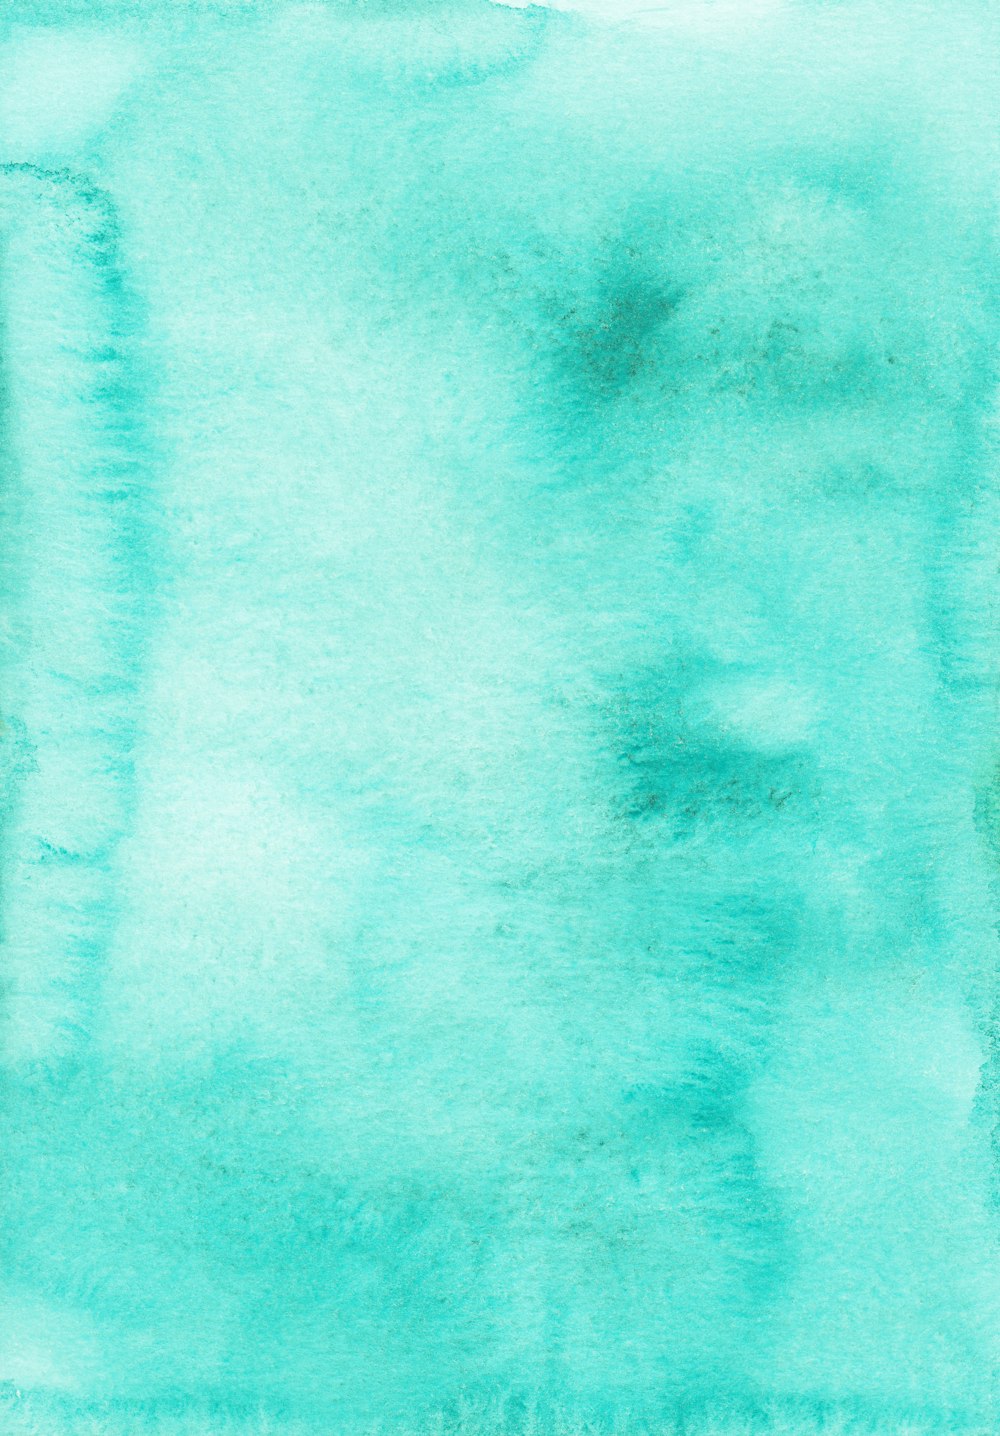 textil verde en la fotografía de primer plano